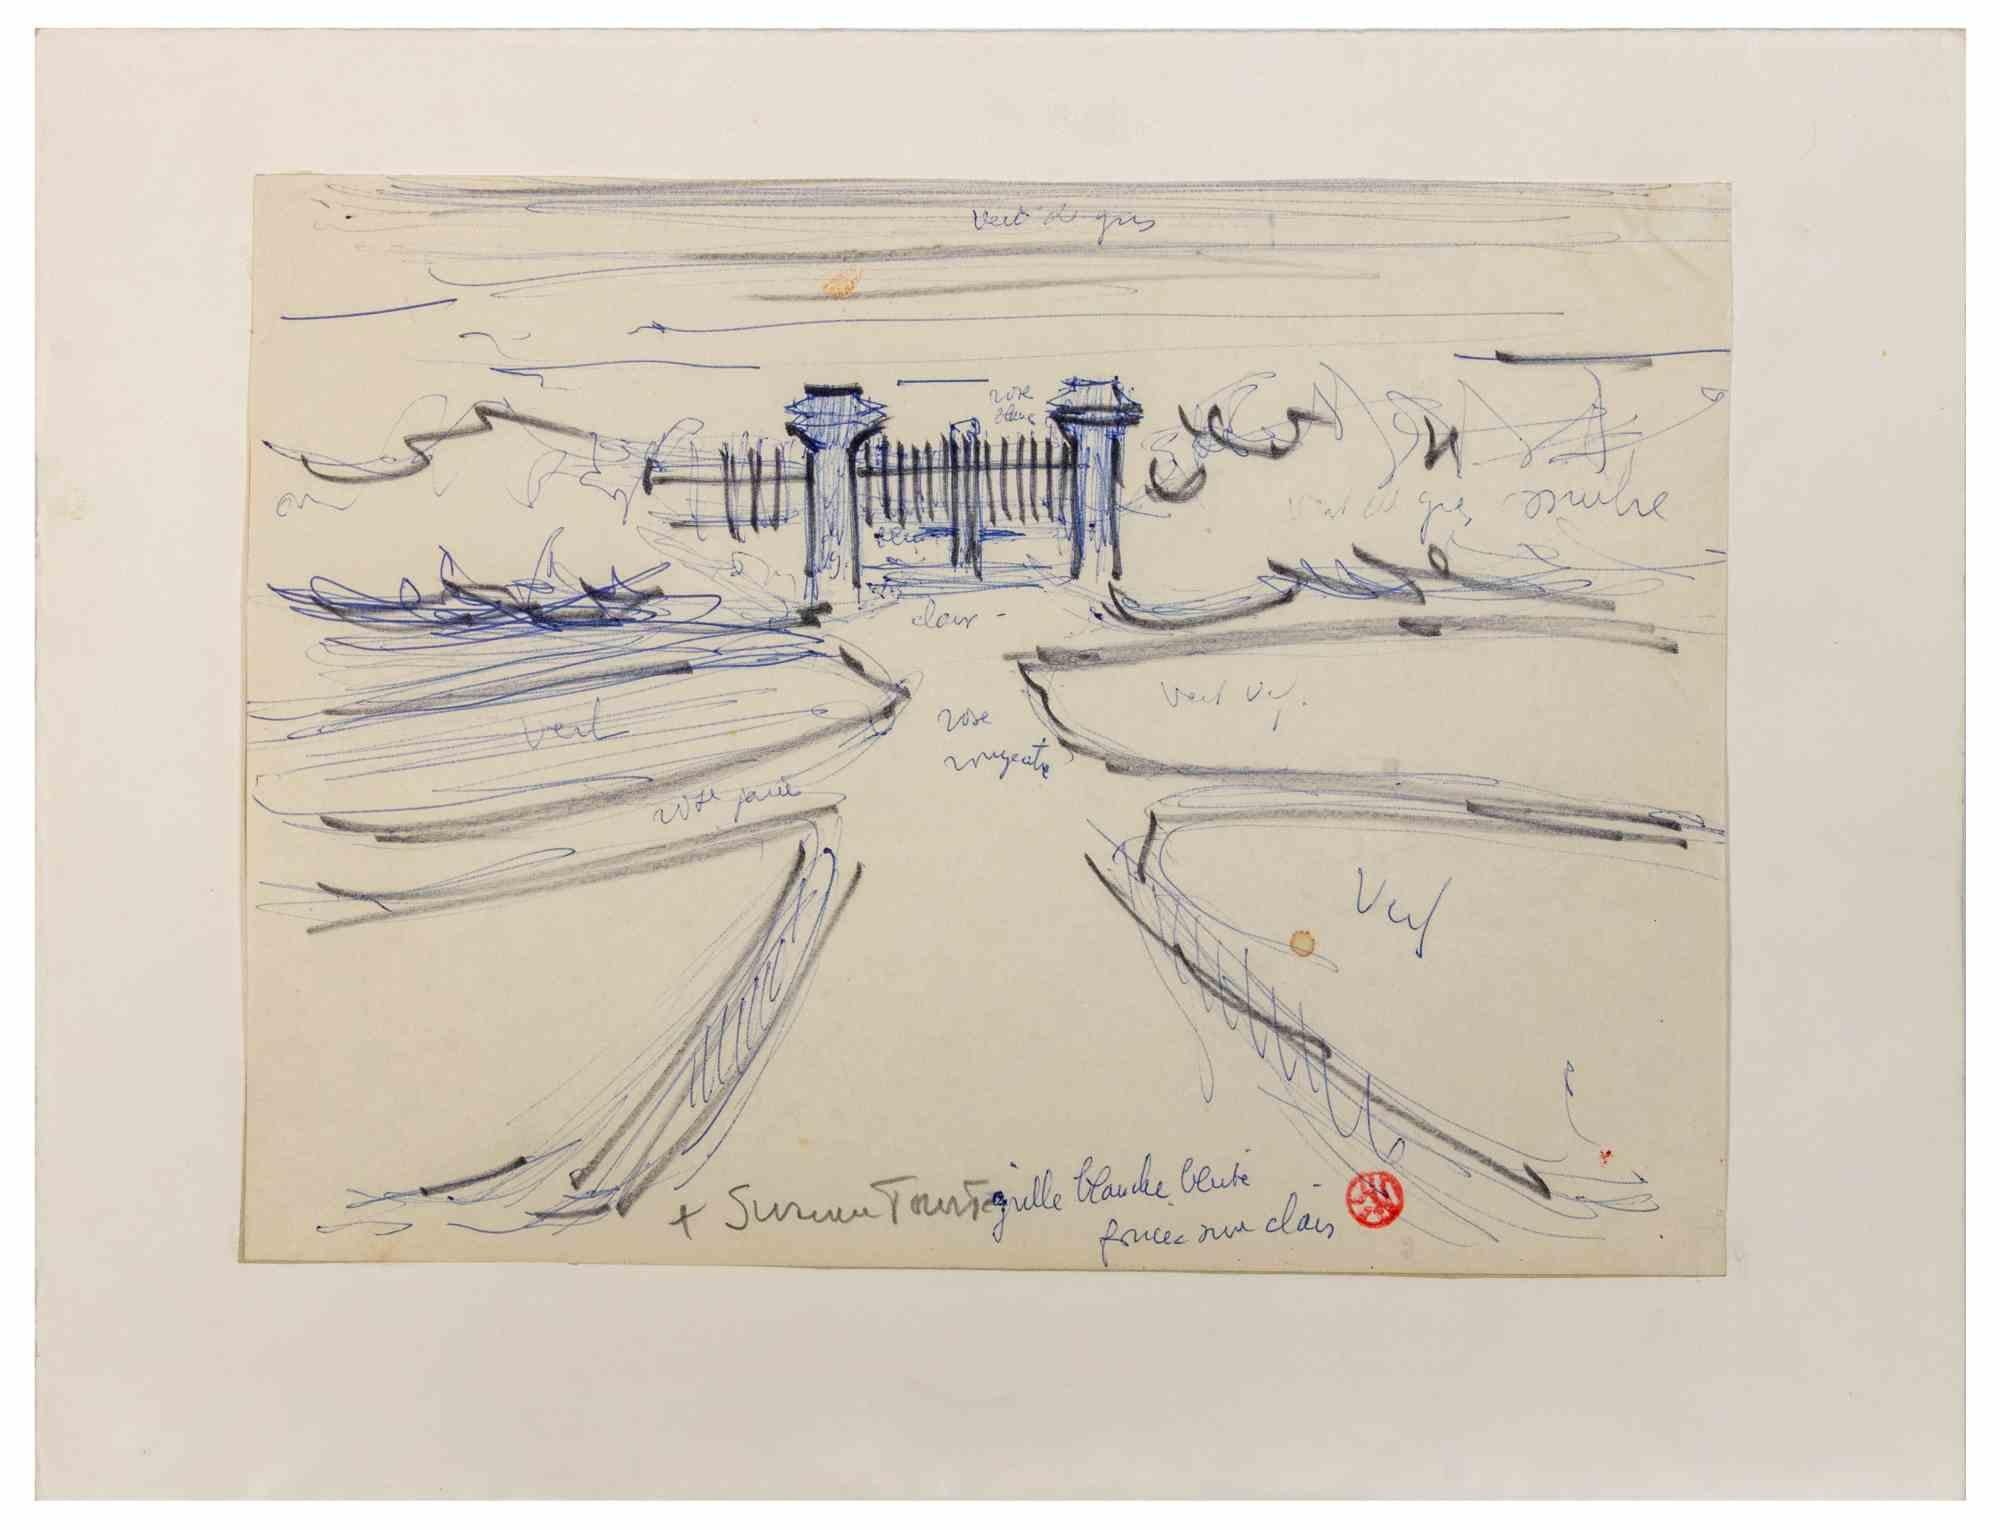 Das Tor  ist ein Kunstwerk von Suzanne Tourte aus den 1940er Jahren. 

Stift, schwarzer Marker und Bleistift auf Papier.

Im unteren Rand handschriftlich signiert und mit Künstlerschrift.

25 x 33 cm. 

Guter Zustand, mit Ausnahme von zwei Flecken